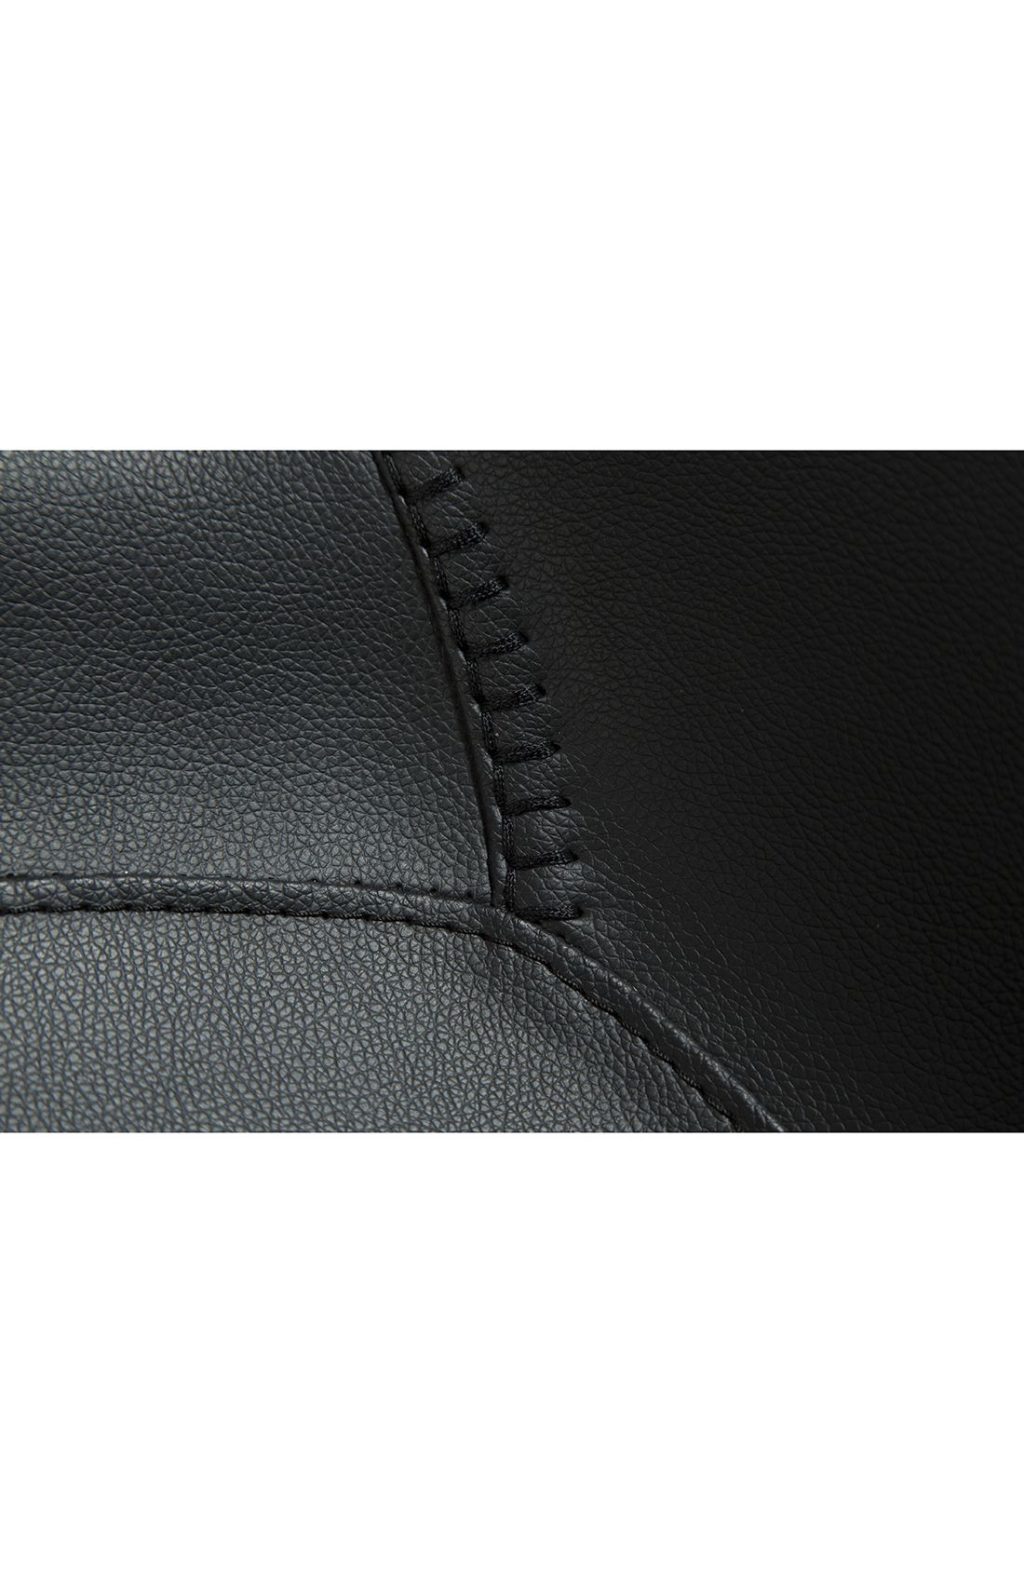 Vintage melna ādas sēžamā daļa ar melnām metāla kājām.